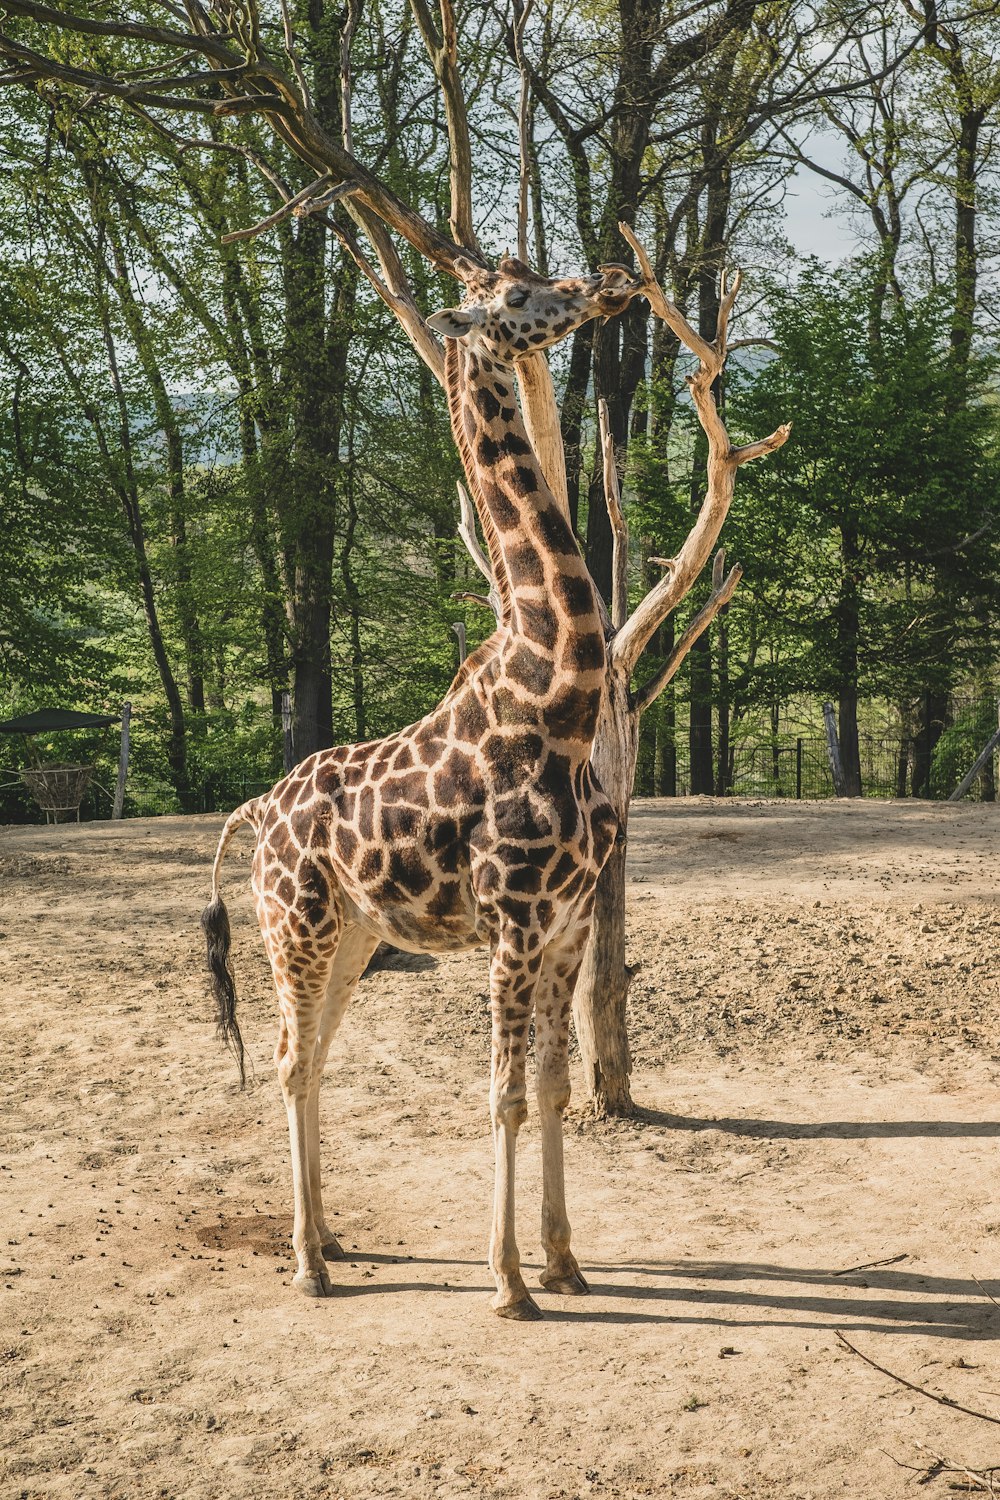 giraffe standing on brown soil during daytime